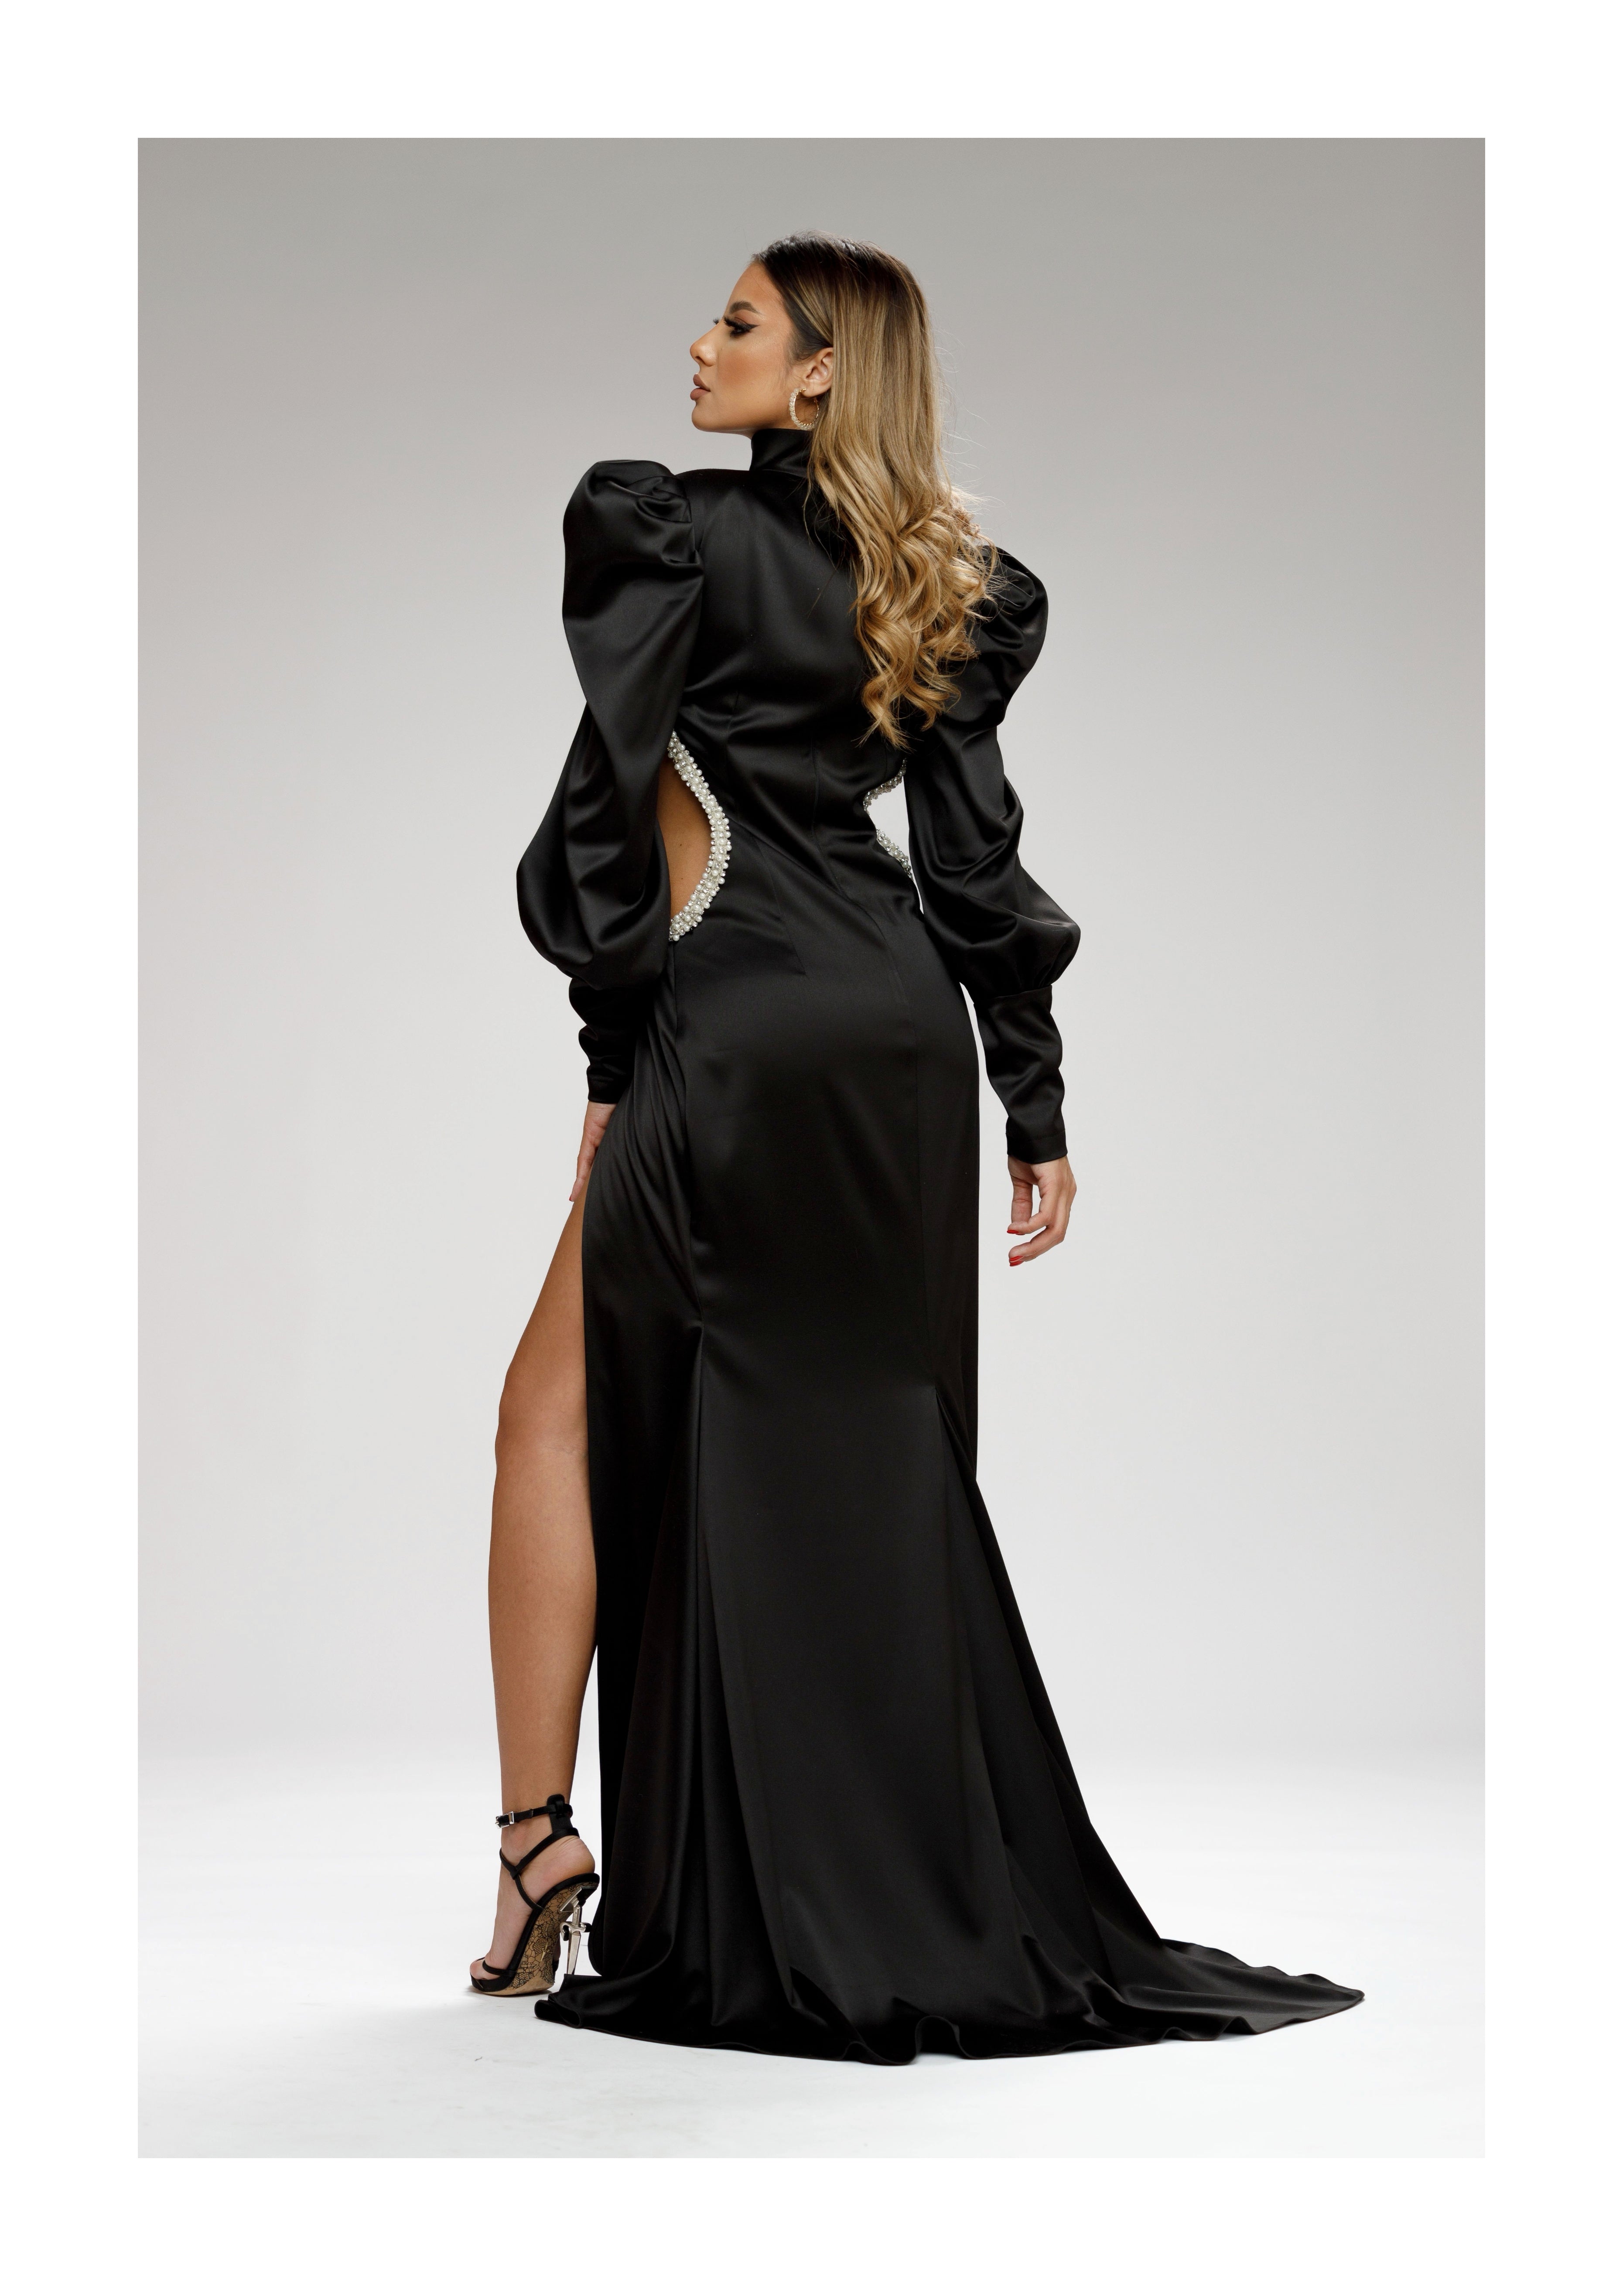 Regal Black Dress